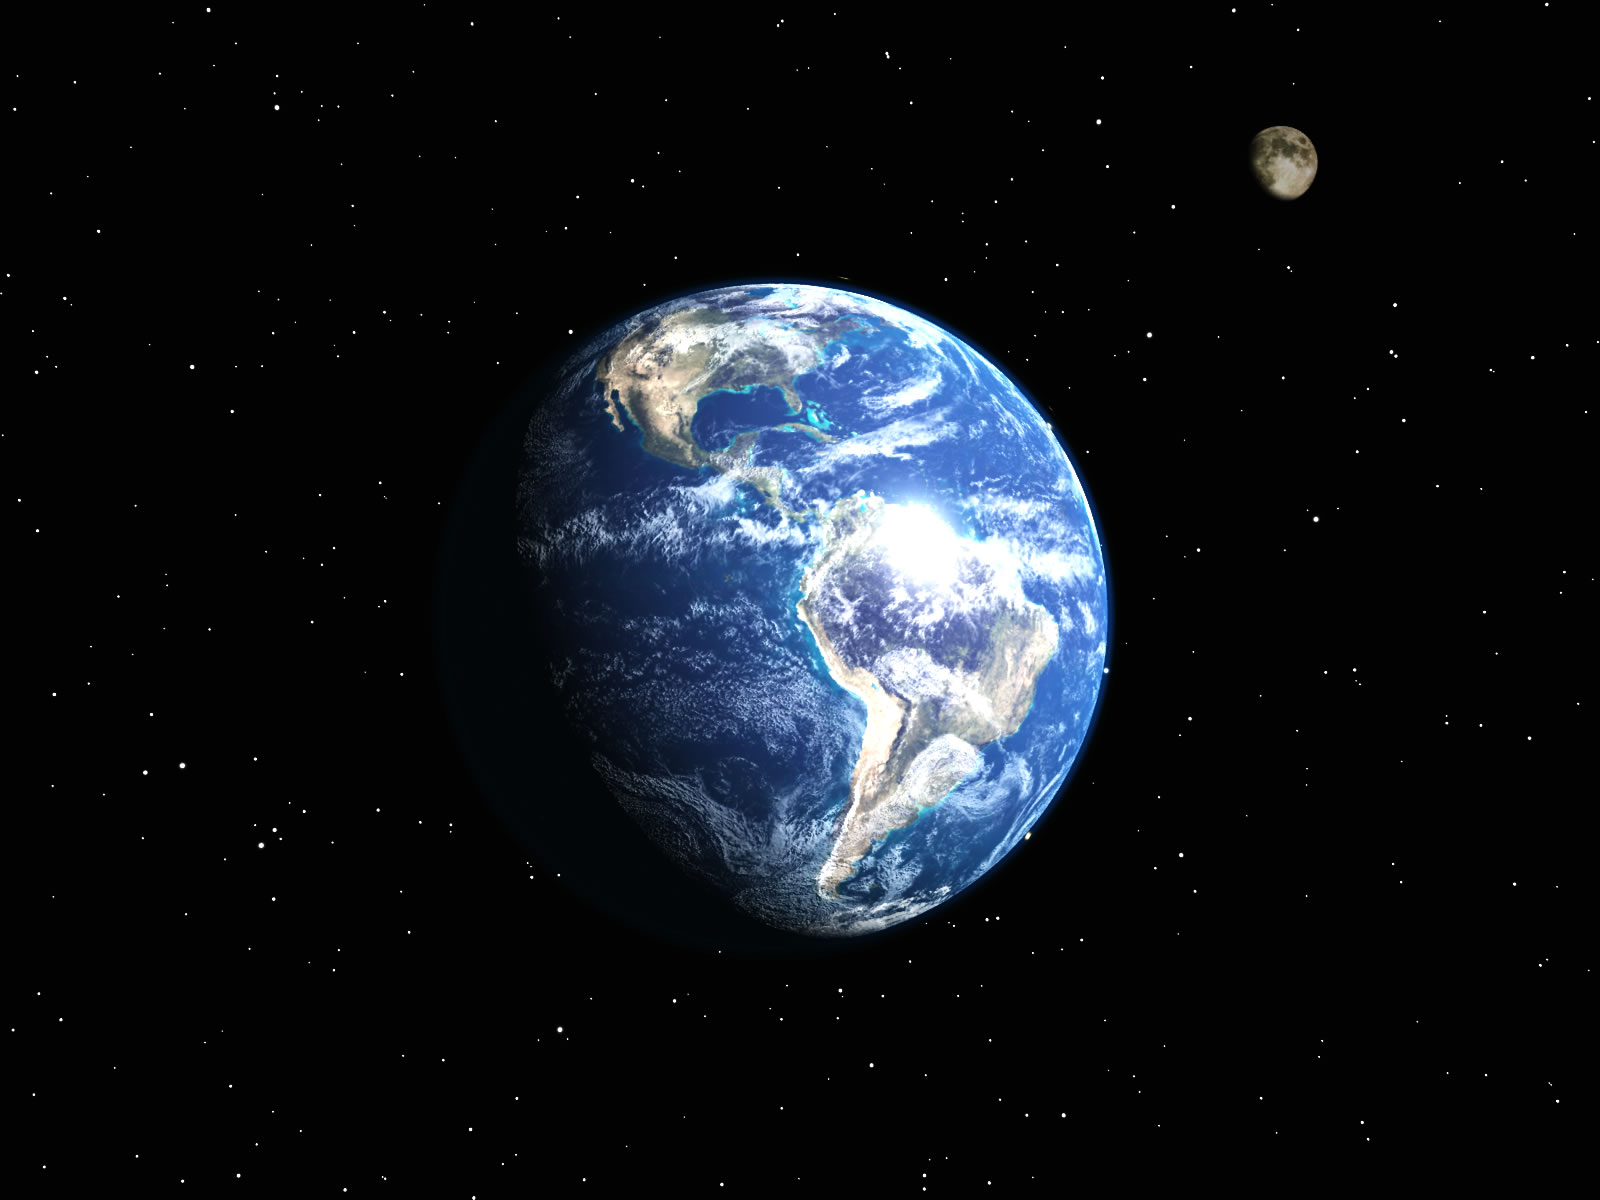 papel pintado fresco de la tierra,planeta,espacio exterior,atmósfera,tierra,objeto astronómico